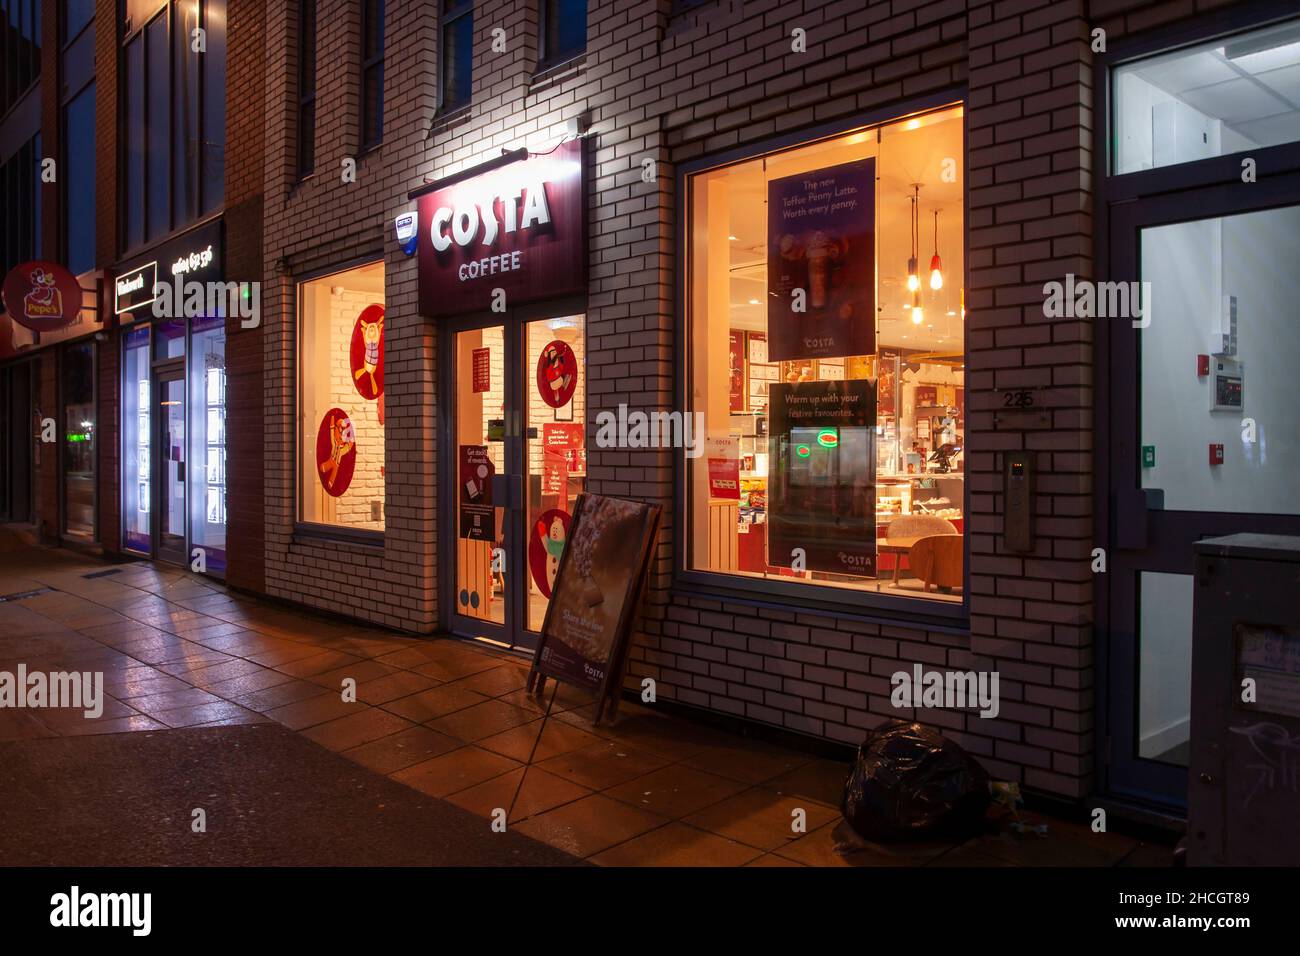 Costa Coffee open on Wellingborough road, Northampton, England, UK Stock Photo